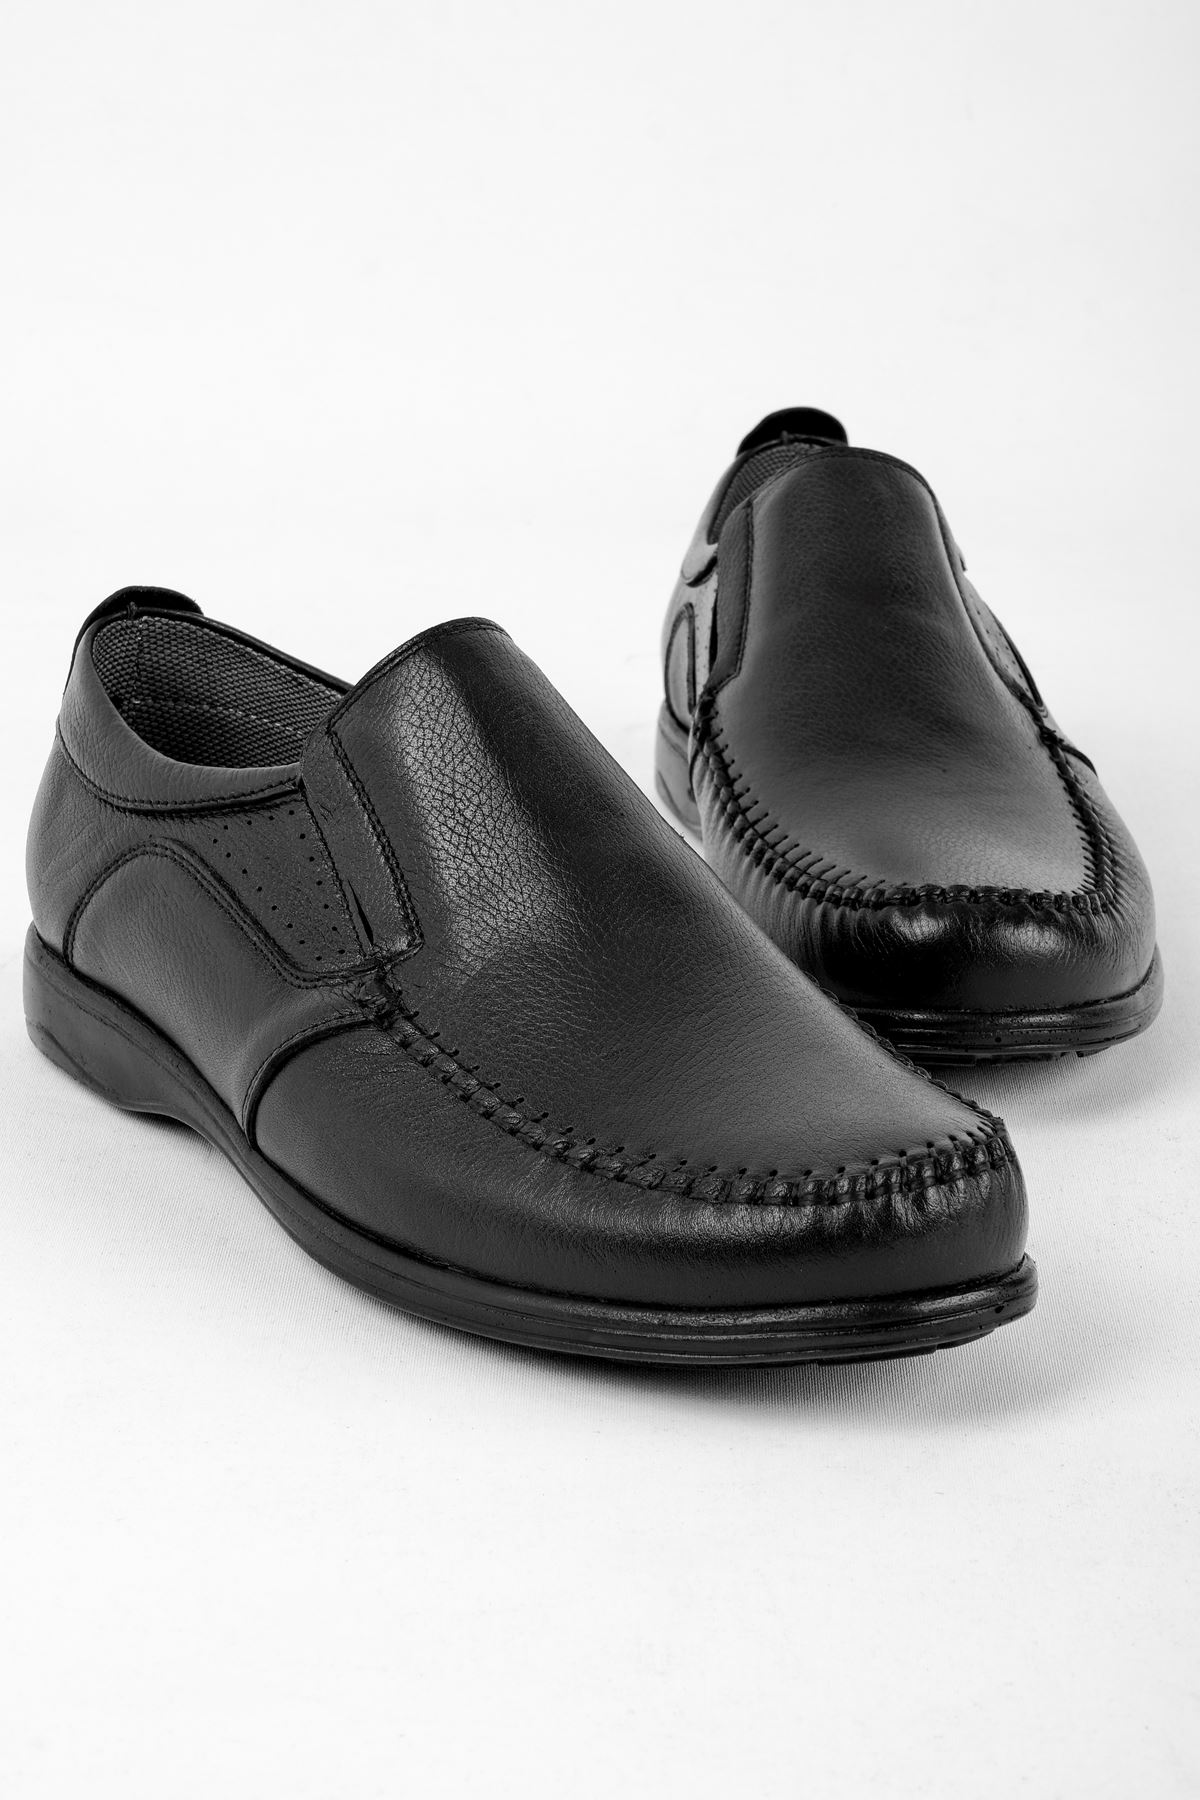 Alexix Erkek Hakiki Deri Ayakkabı-siyah